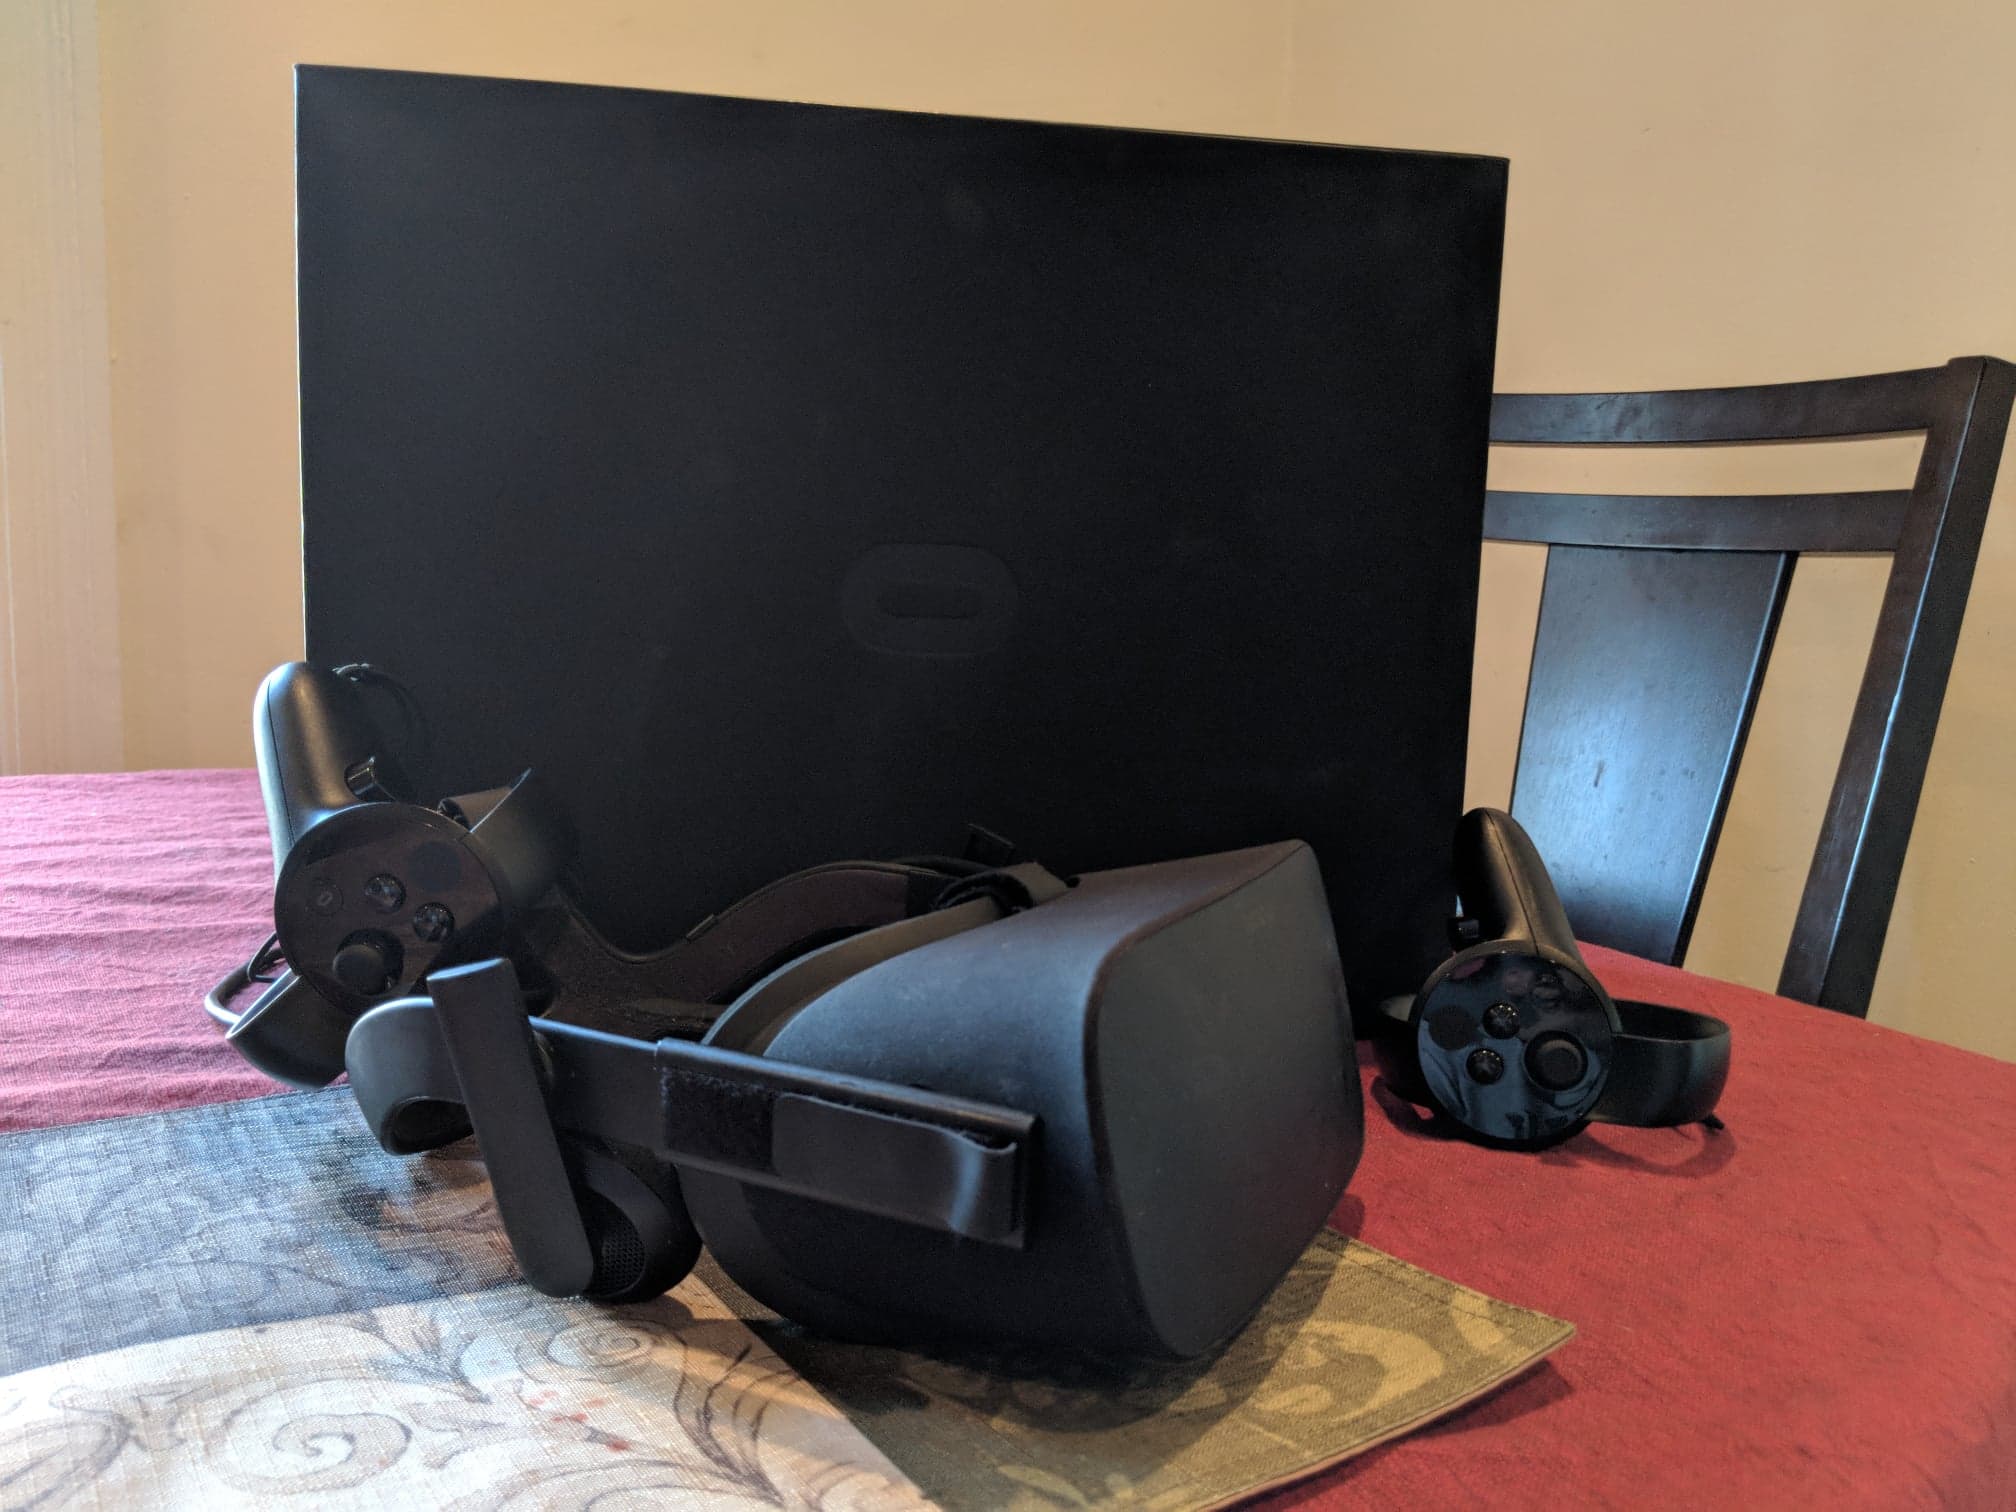 oculus-setup-on-table.jpg